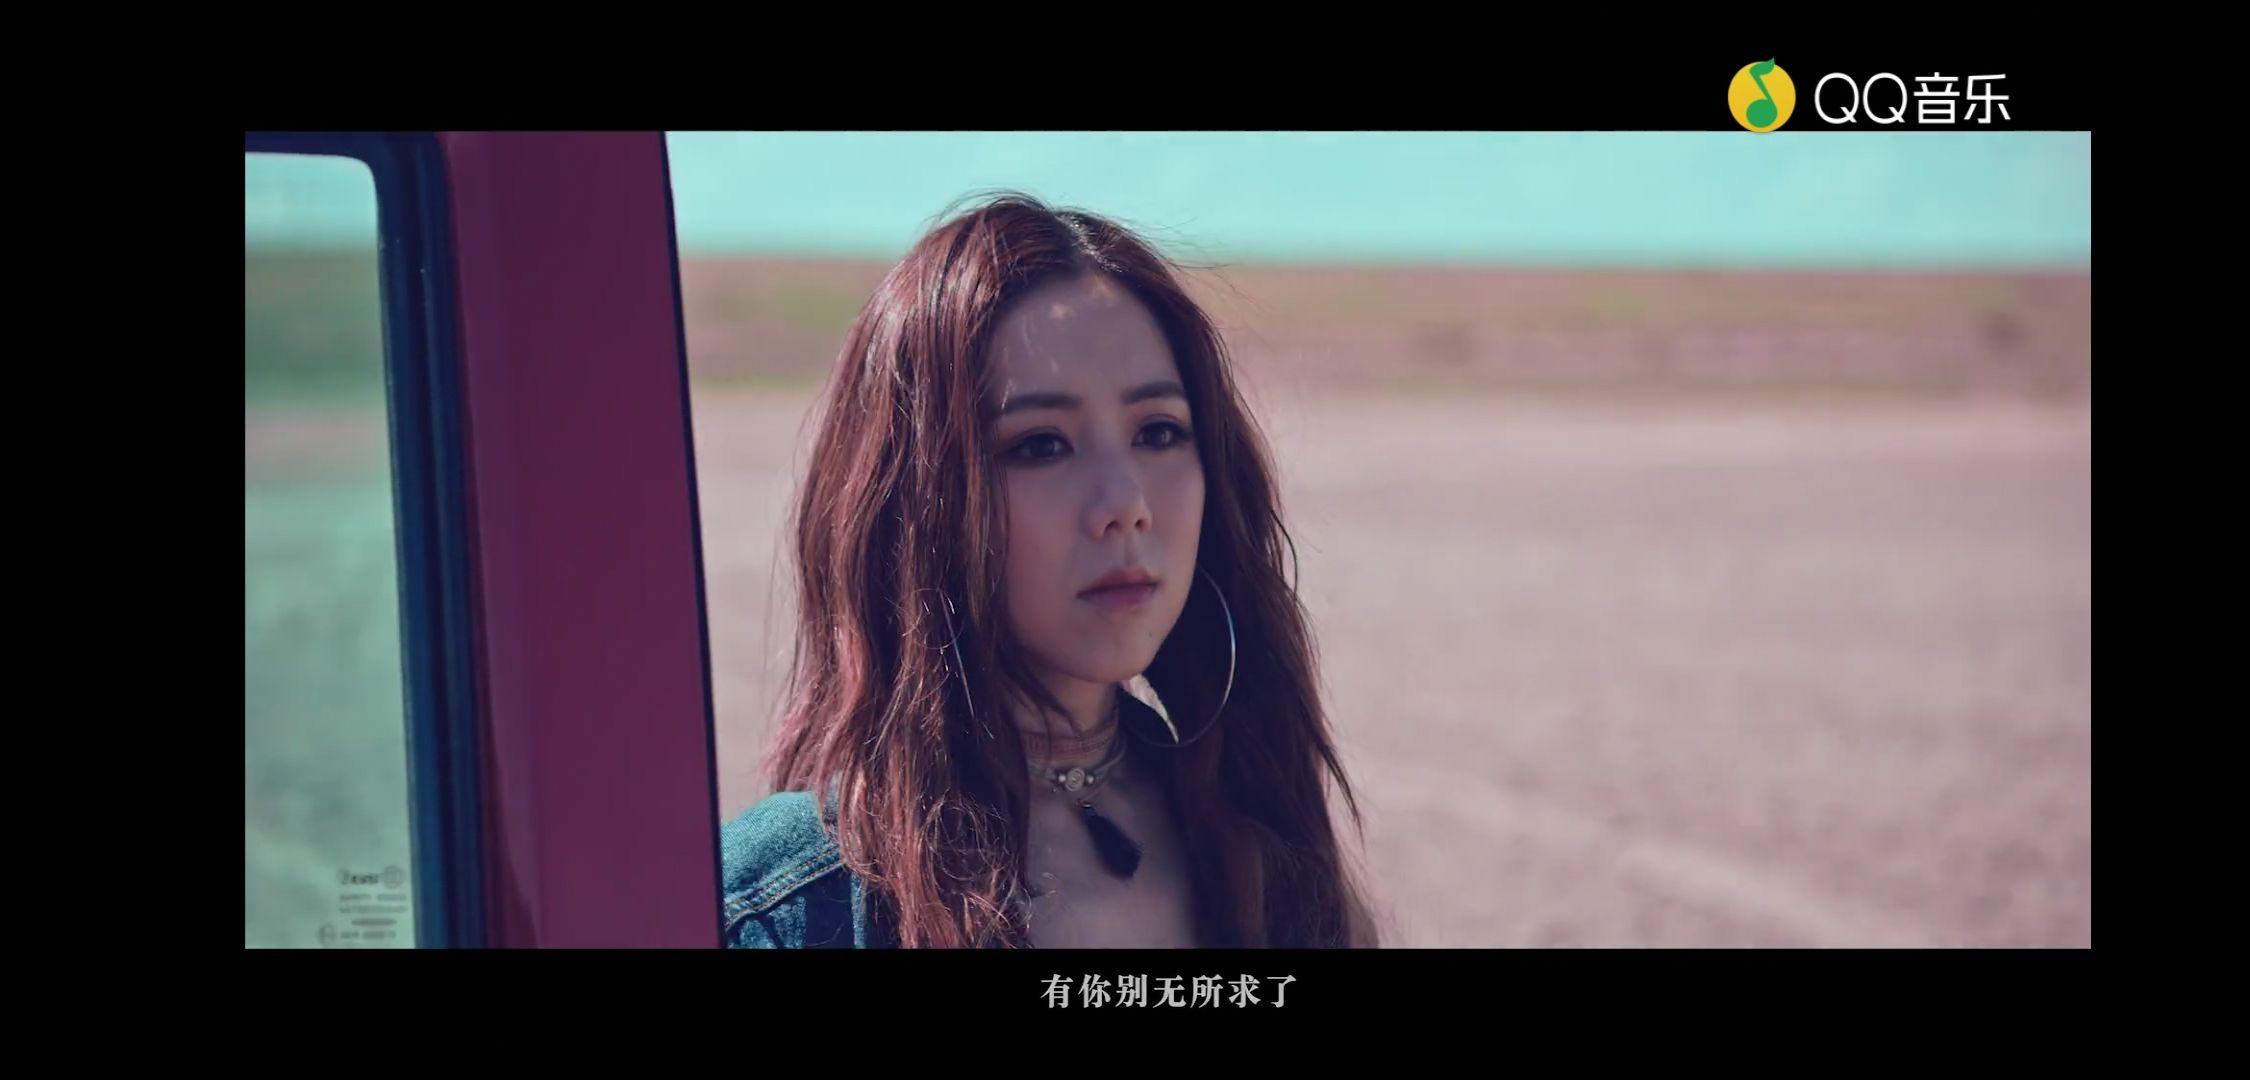 鄧紫棋內蒙拍〈倒數〉MV，男主角黃騰浩超暖心 | Vogue Taiwan